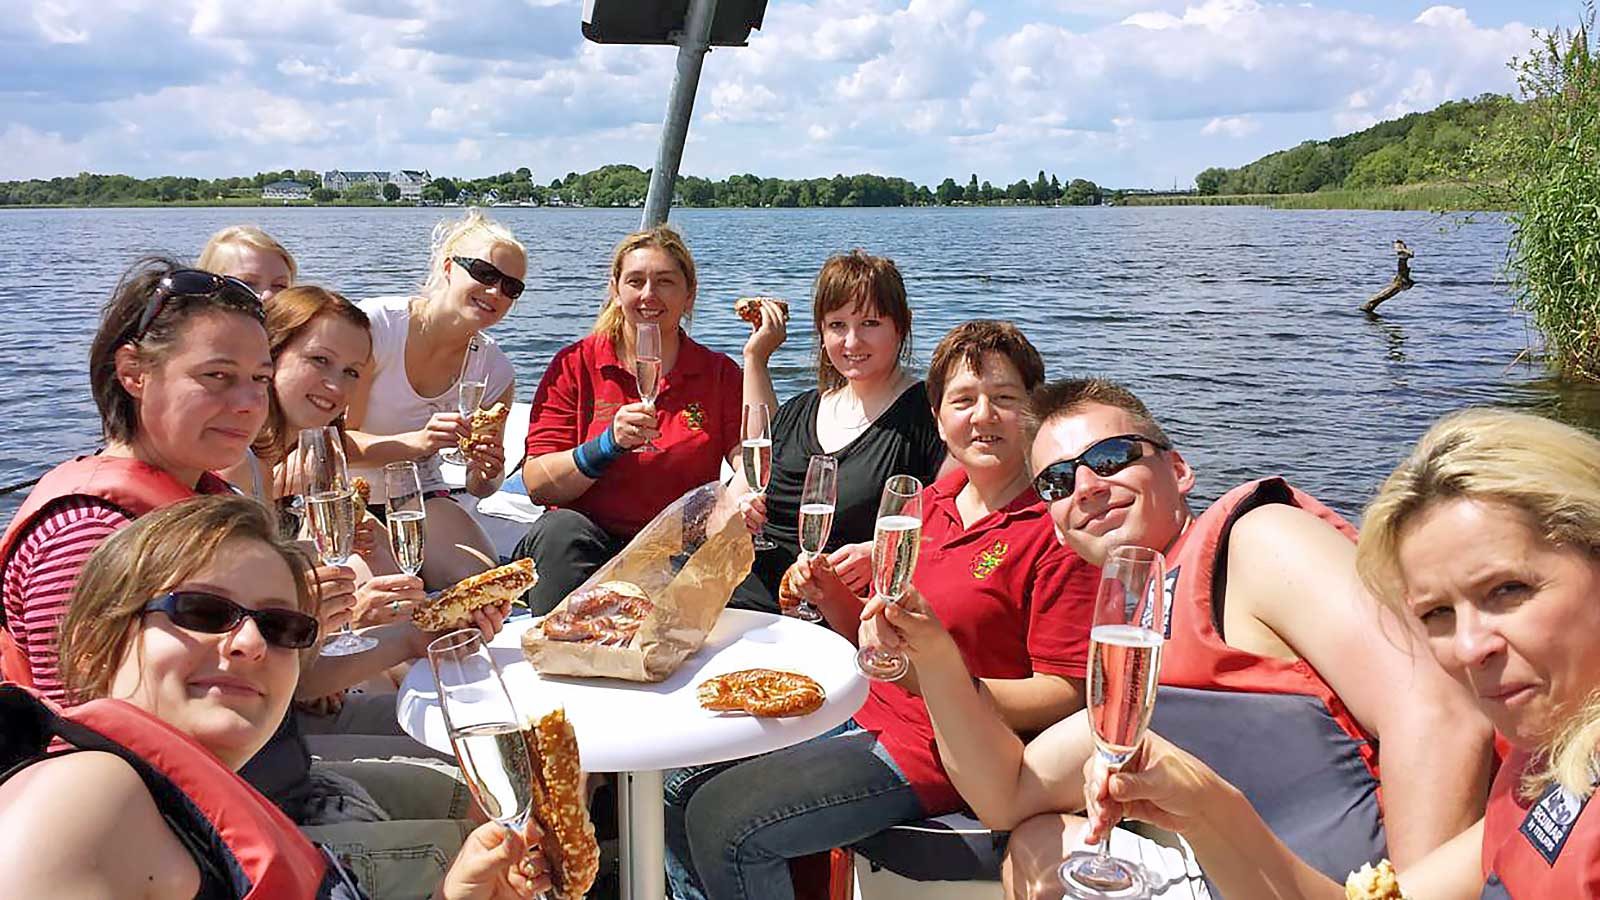 Gruppenfoto von einer gelungenen Bootstour auf dem Templiner See